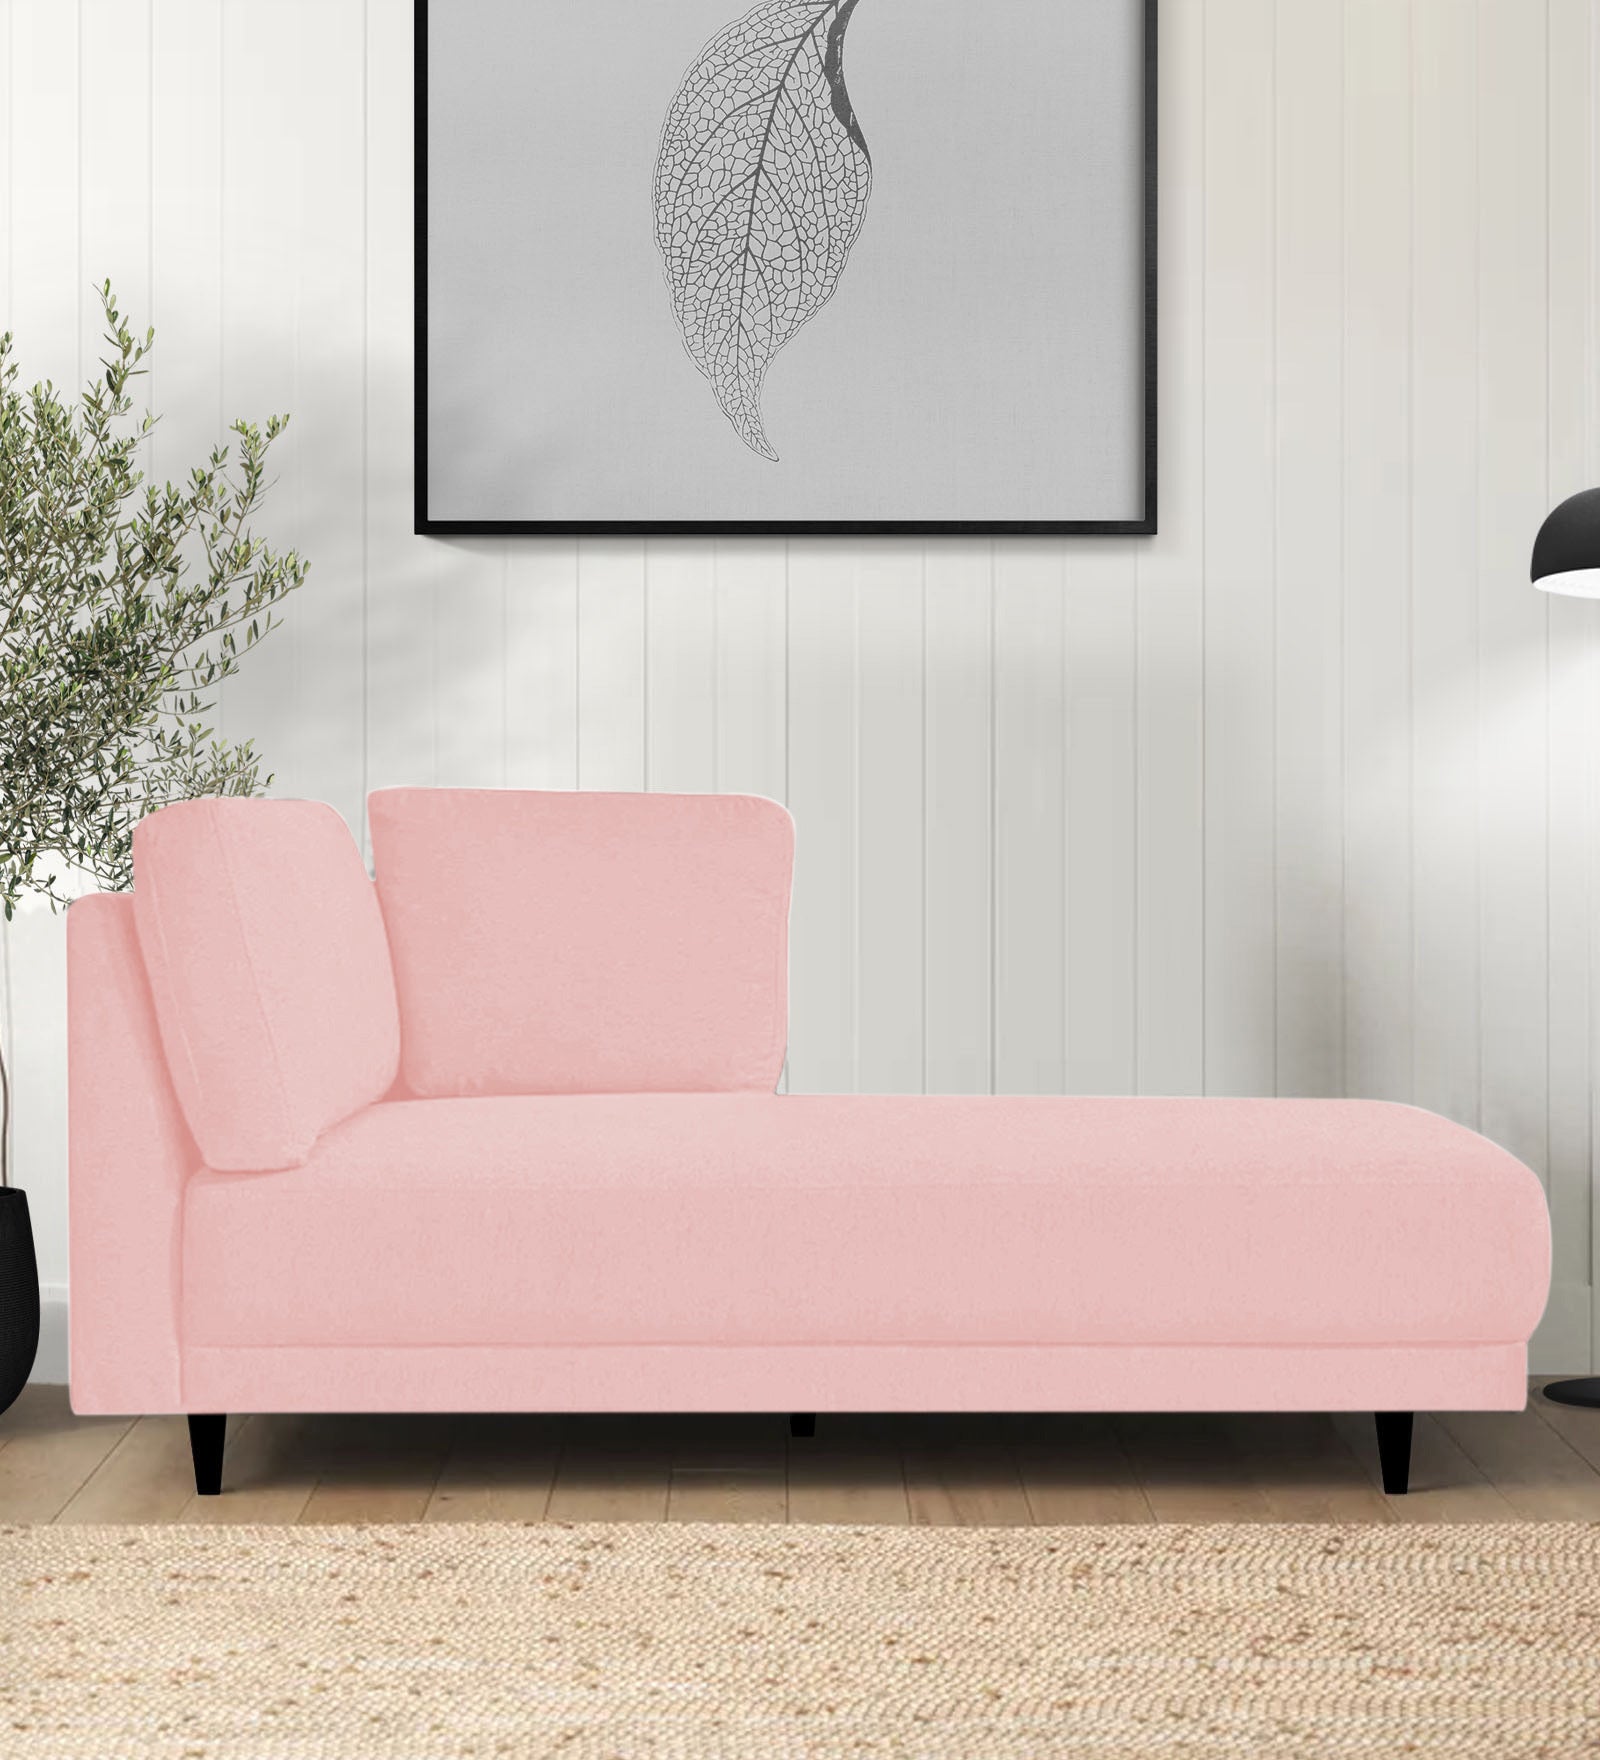 Jonze Velvet RHS Chaise Lounger in Millennial Pink Colour